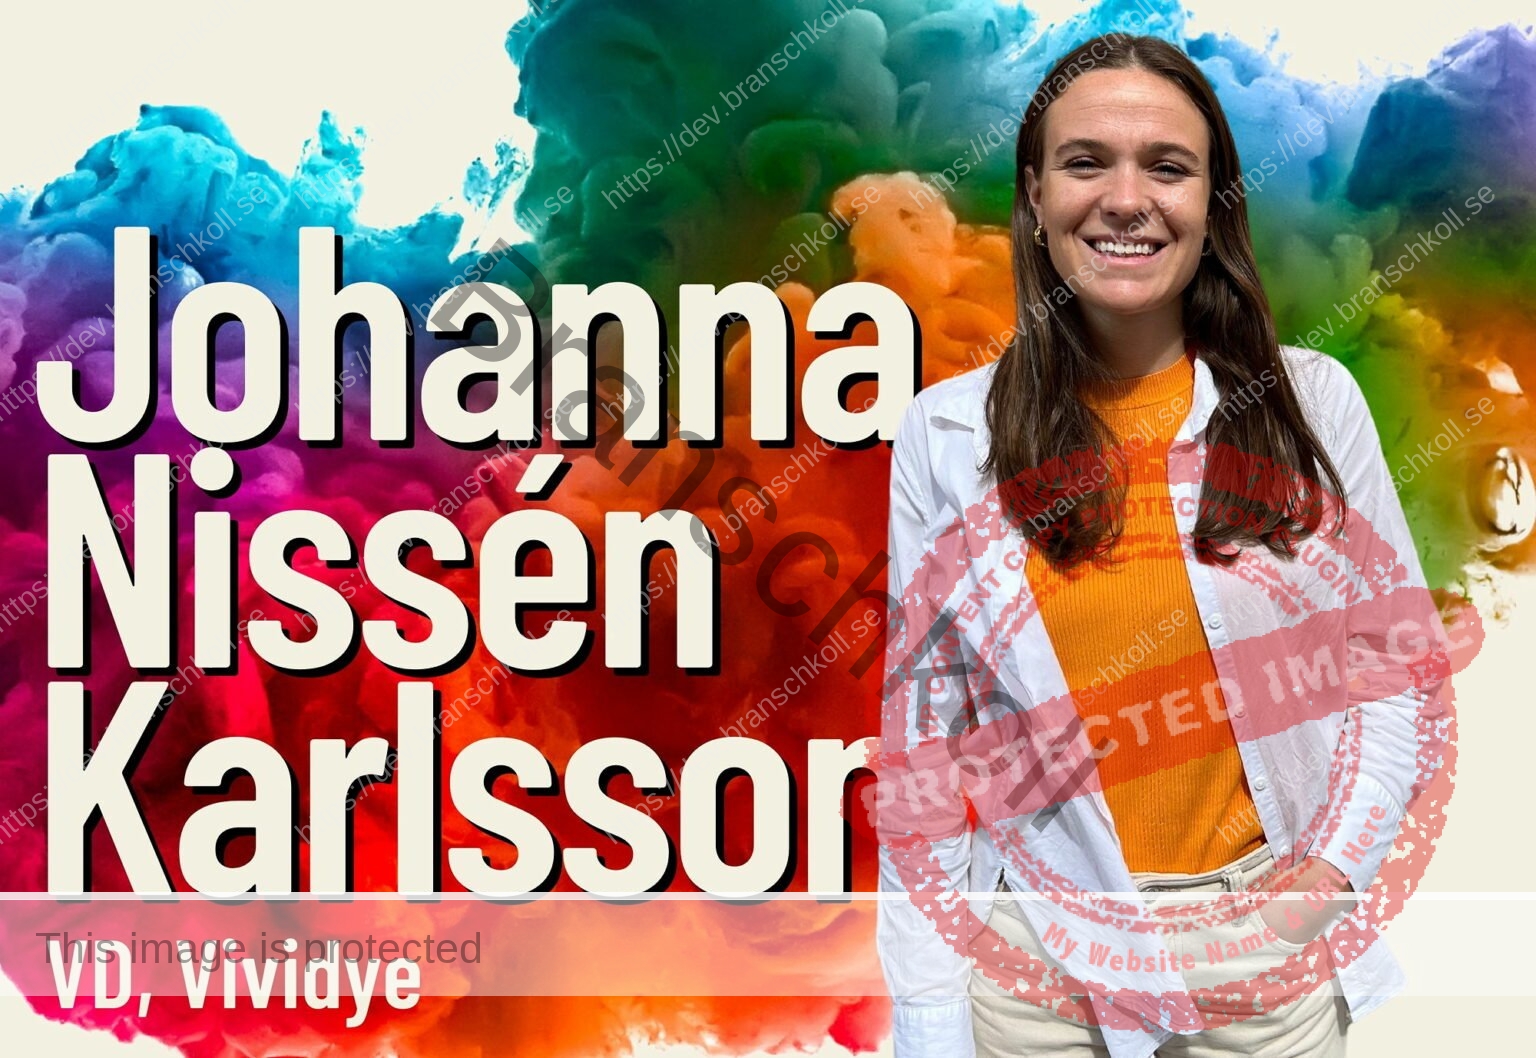 Johanna Nissén Karlsson vd på Vividye medverkar i Branschkollpodden.